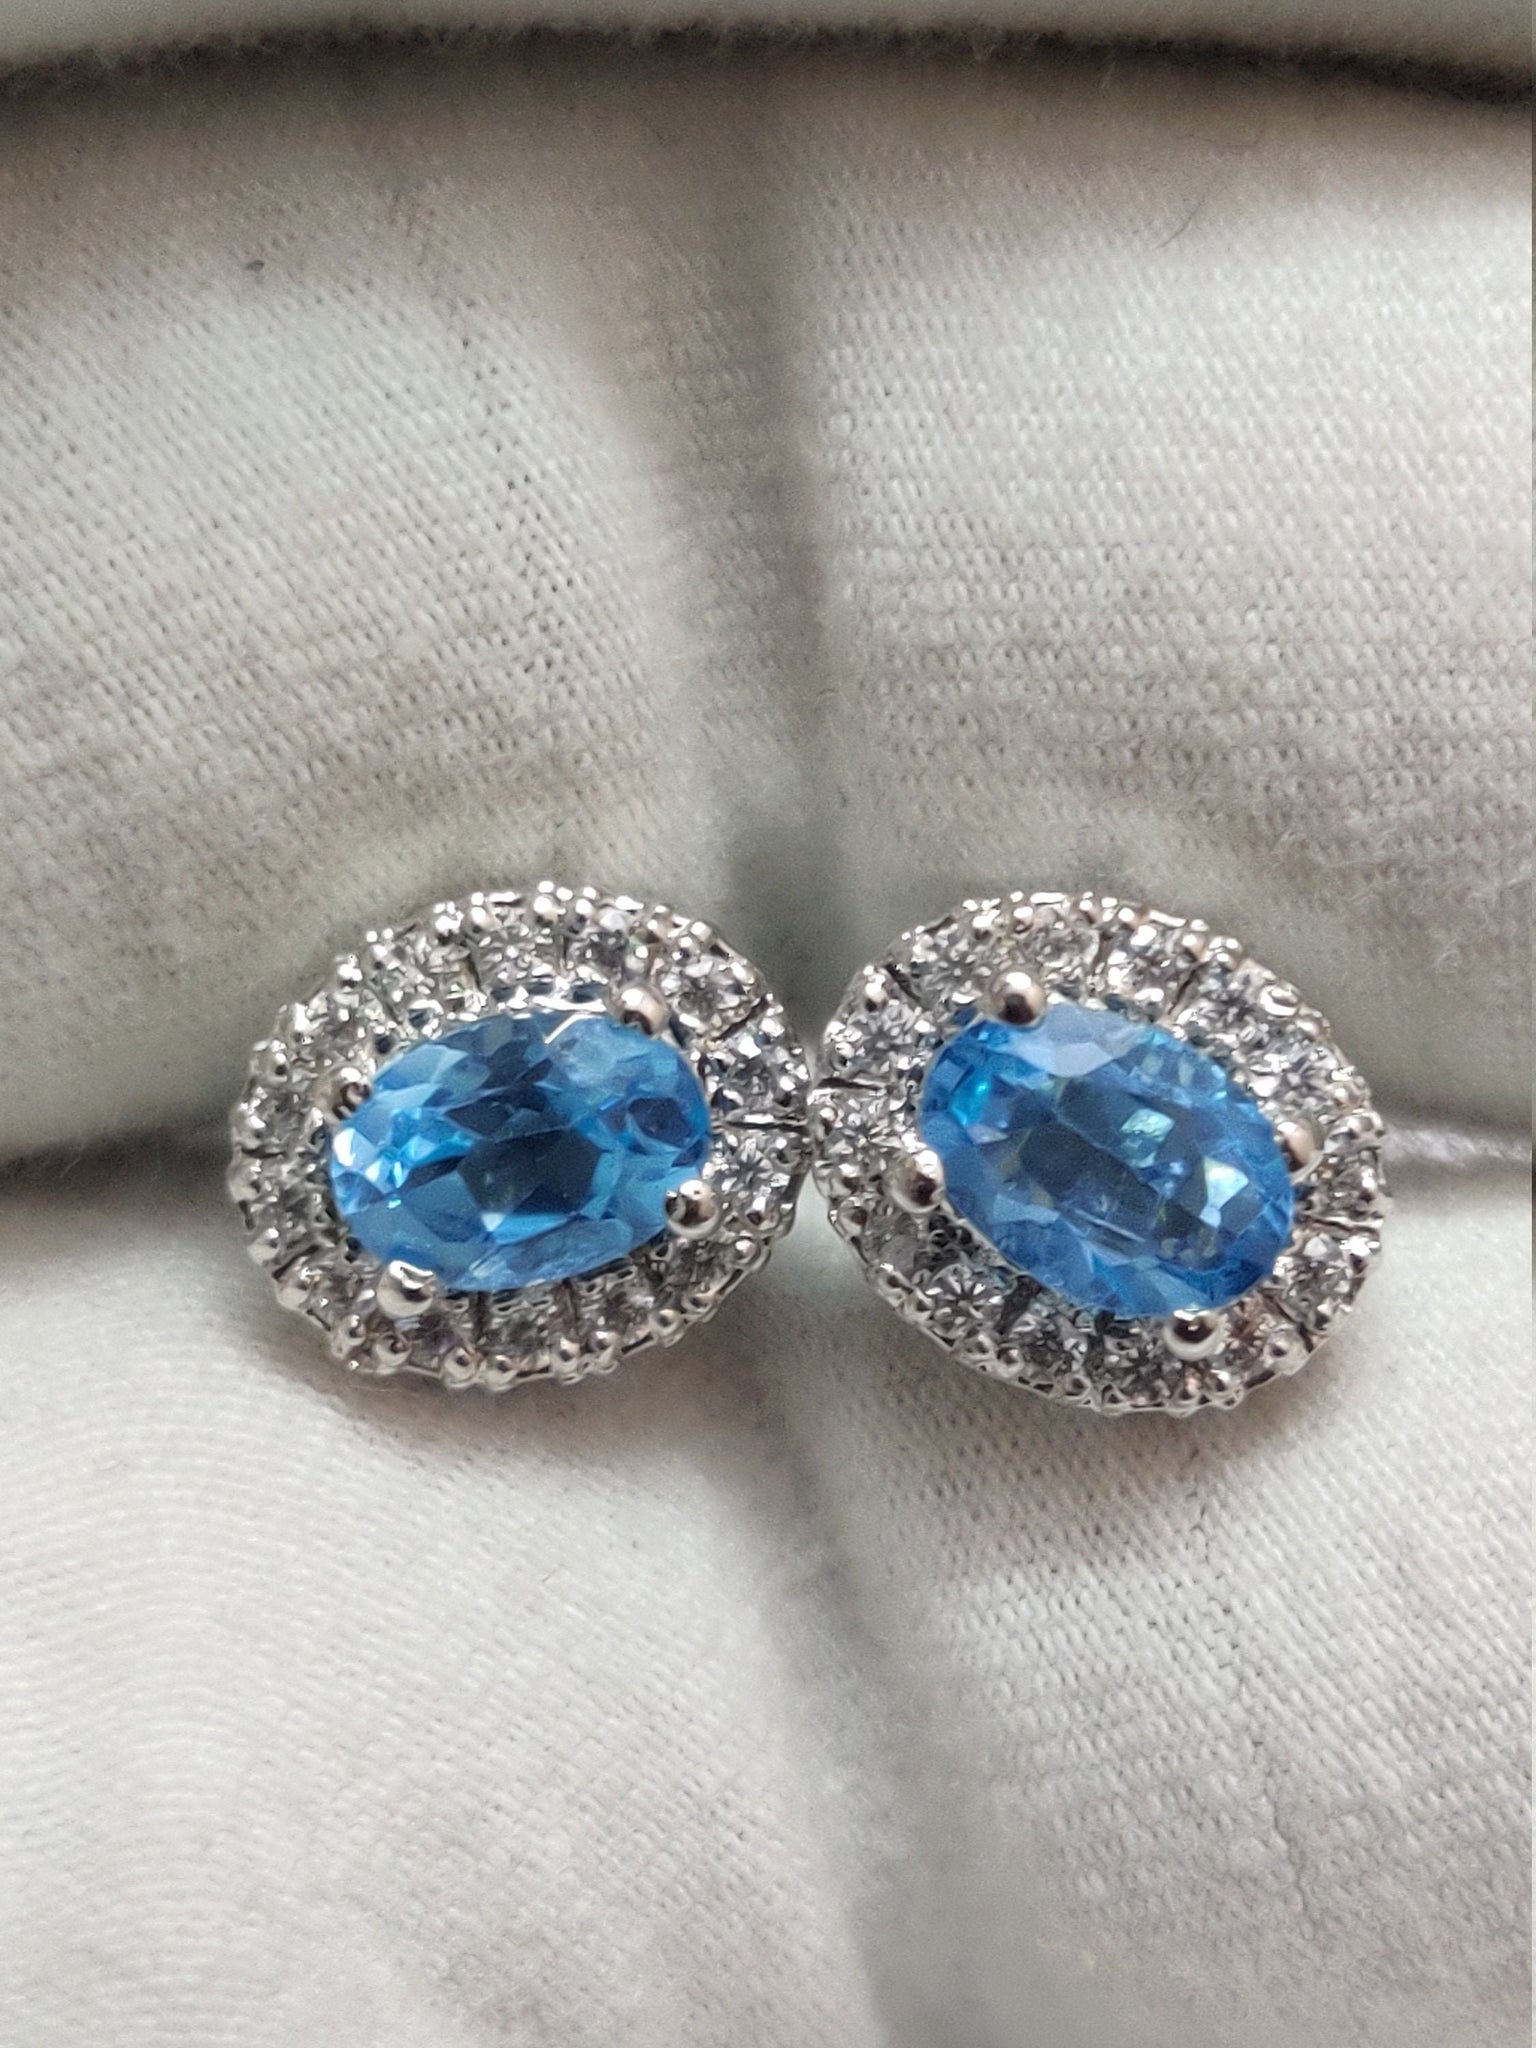 Swiss Blue Topaz Ear Studs 2 Ct Swiss Topaz Stud Earrings Blue Topaz Earrings 5x7 mm oval Swiss Blue Topaz Cluster Earrings Birthstone Studs